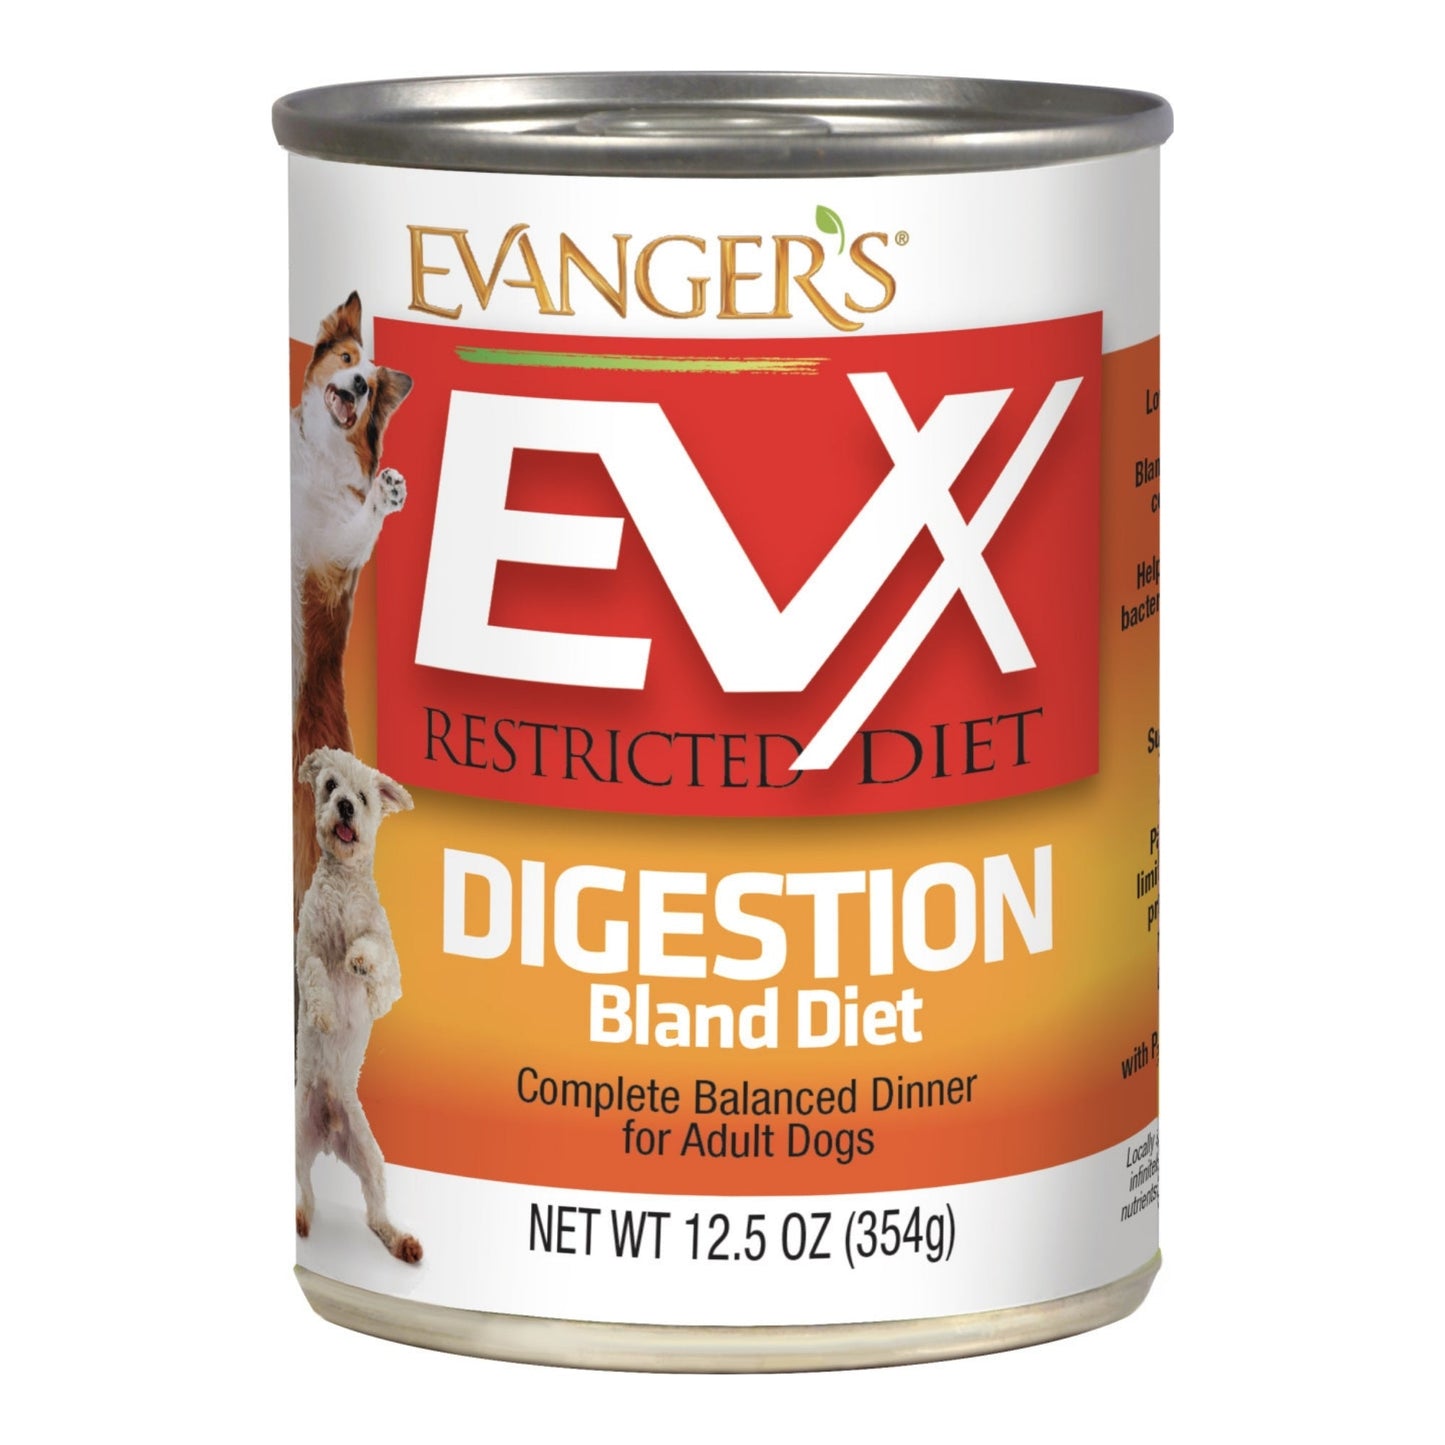 Evanger's EVx Restricted Diet Digestion Bland Diet Wet Dog Food 12.5oz. (Case of 12)